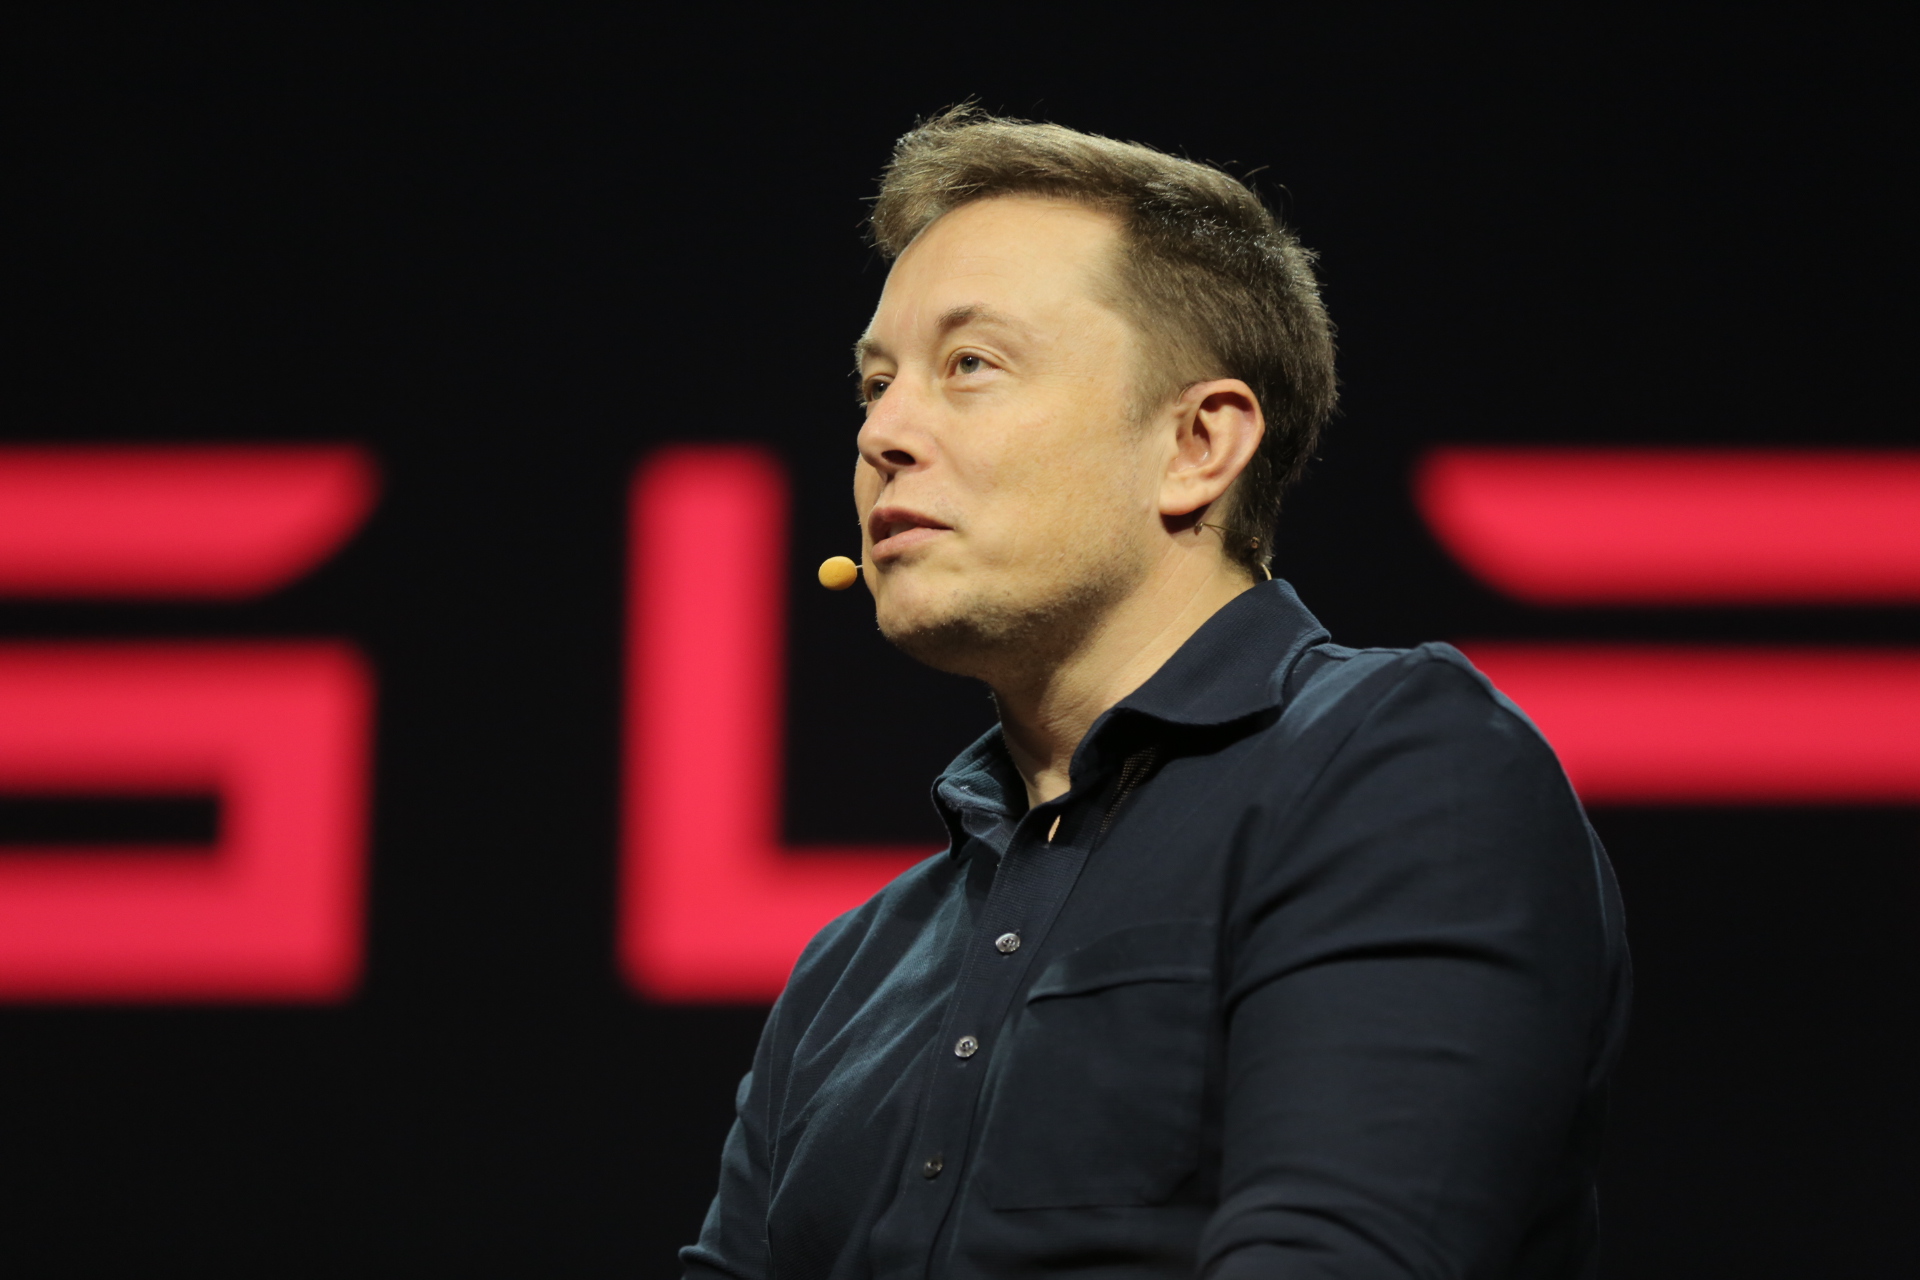 Em 2008, Elon Musk reestruturou a direção da Tesla e investiu o seu próprio dinheiro para salvar a companhia da falência.